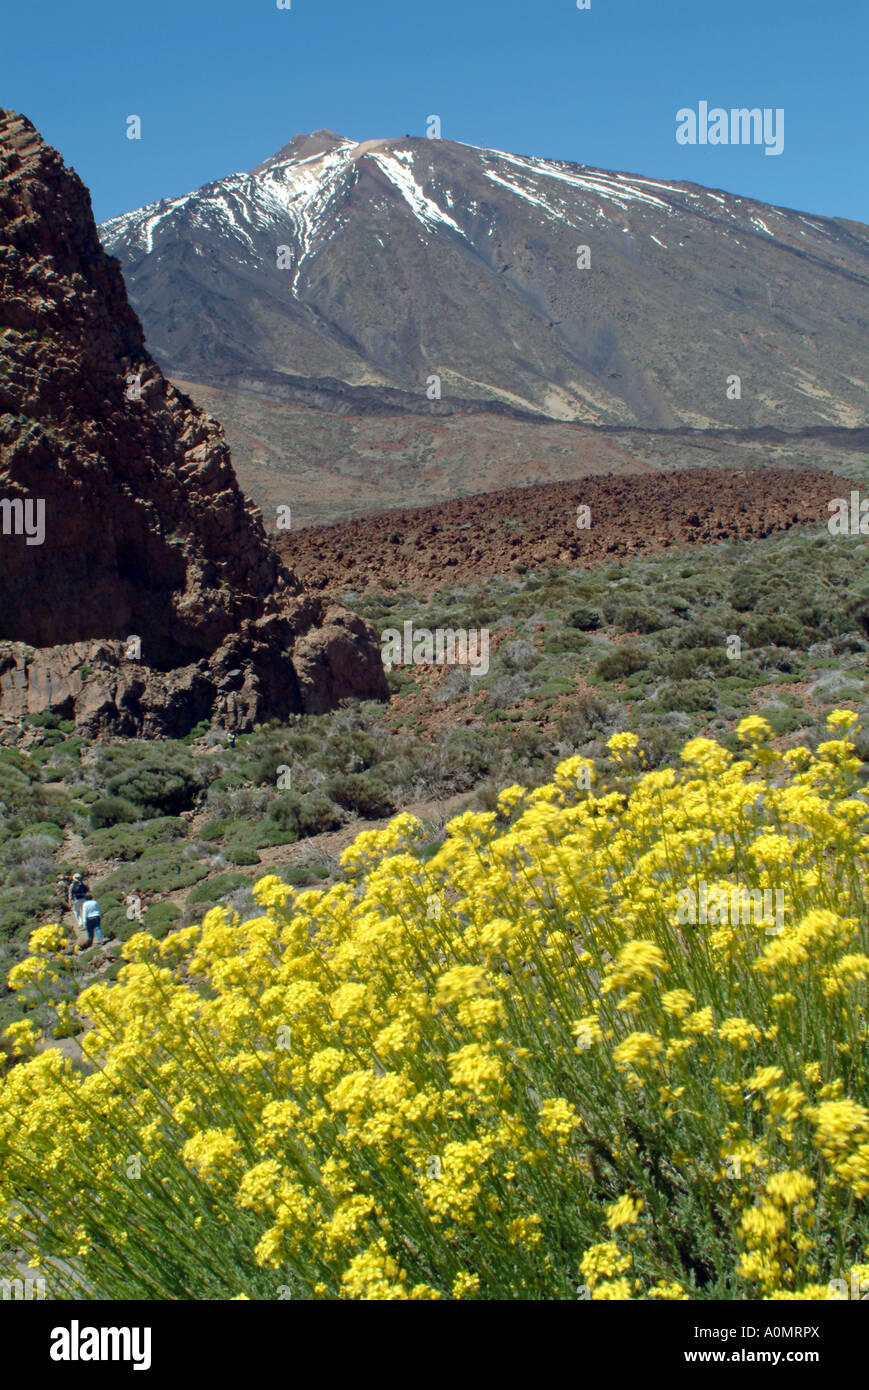 yellow flowers on volcanic rock Kanarenginster an den Hängen des Teide Stock Photo